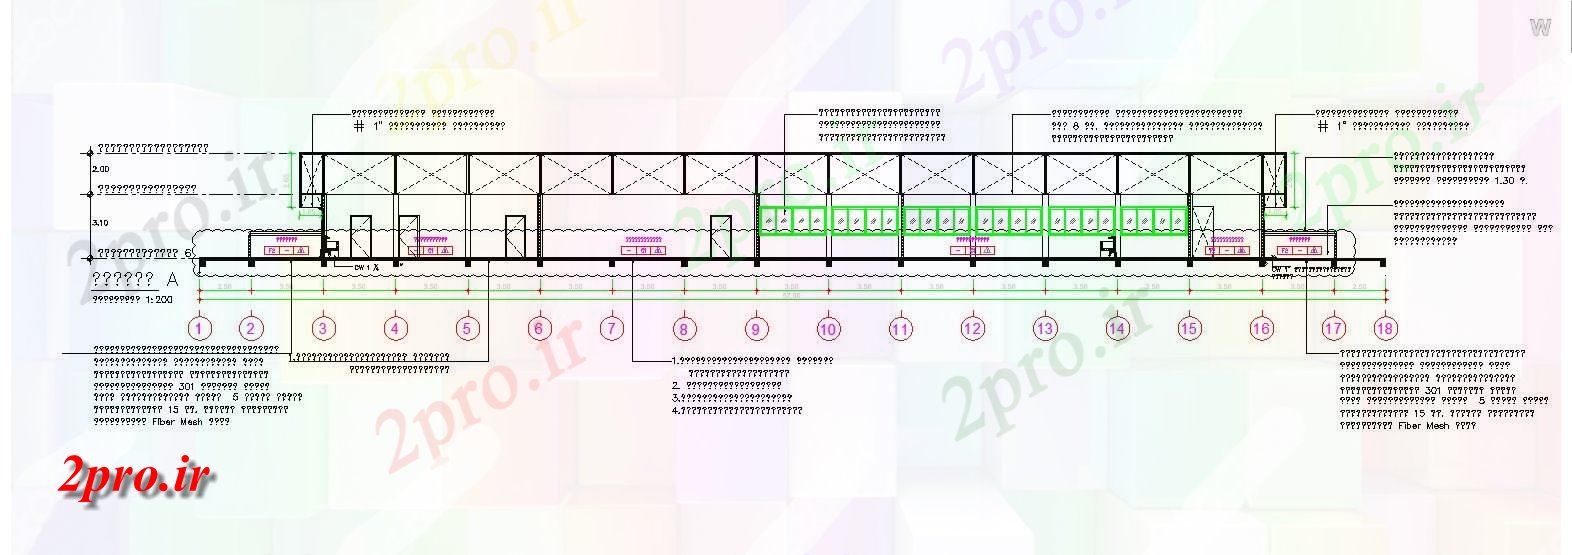 دانلود نقشه پلان مقطعی هدر اتصال لوله از یک طبقه ساختمان و جزئیات بخش  اتوکد     دو بعدی   ارائه   (کد162045)